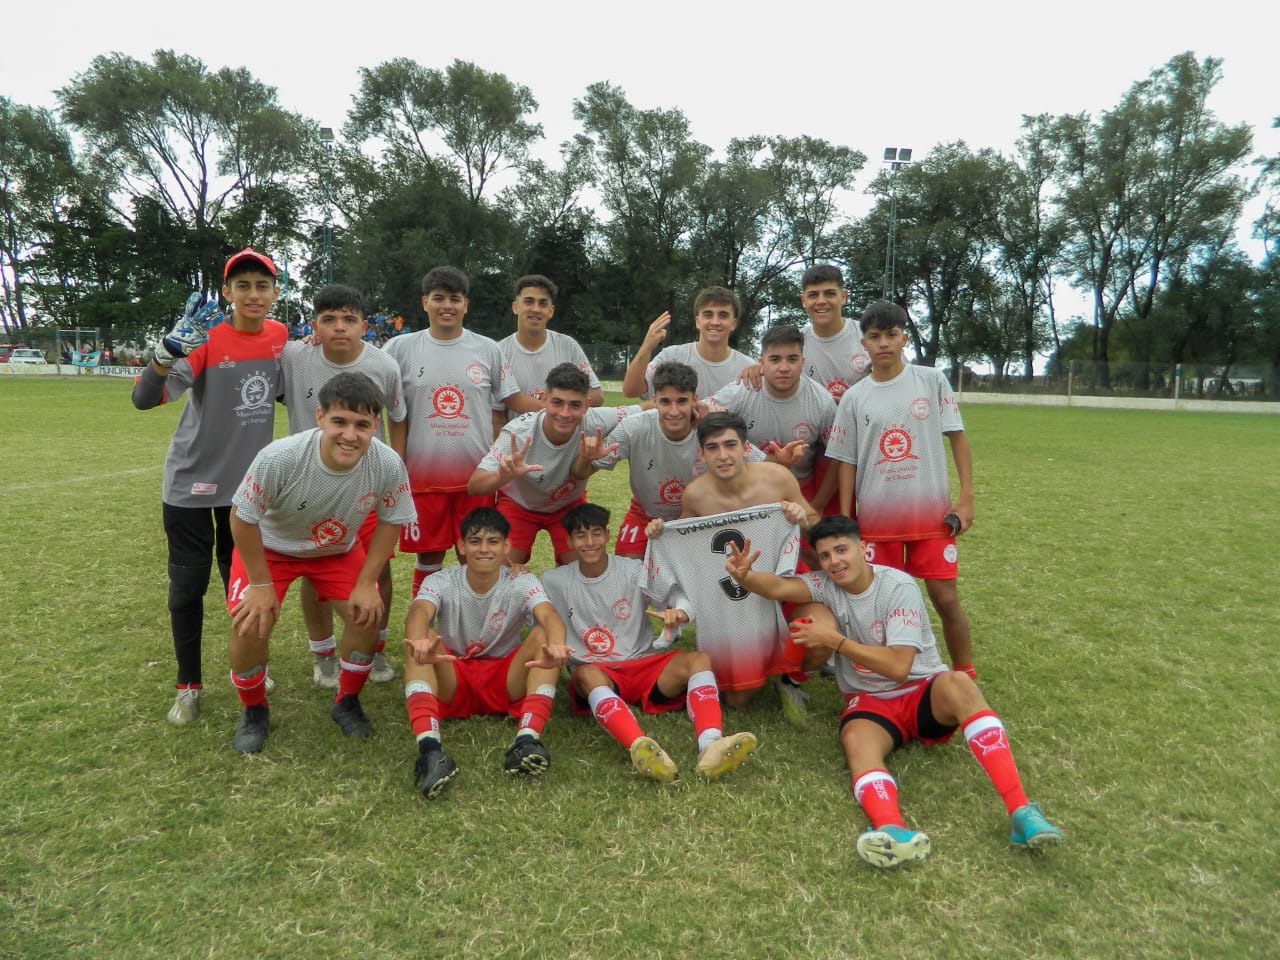 Charrense FC y Recreativo Unión de Olaeta en el Norte, y Sportivo Municipal y Correo y Telecomunicaciones en el Centro ganaron sus 2 compromisos y mandan en sus respectivas zonas.